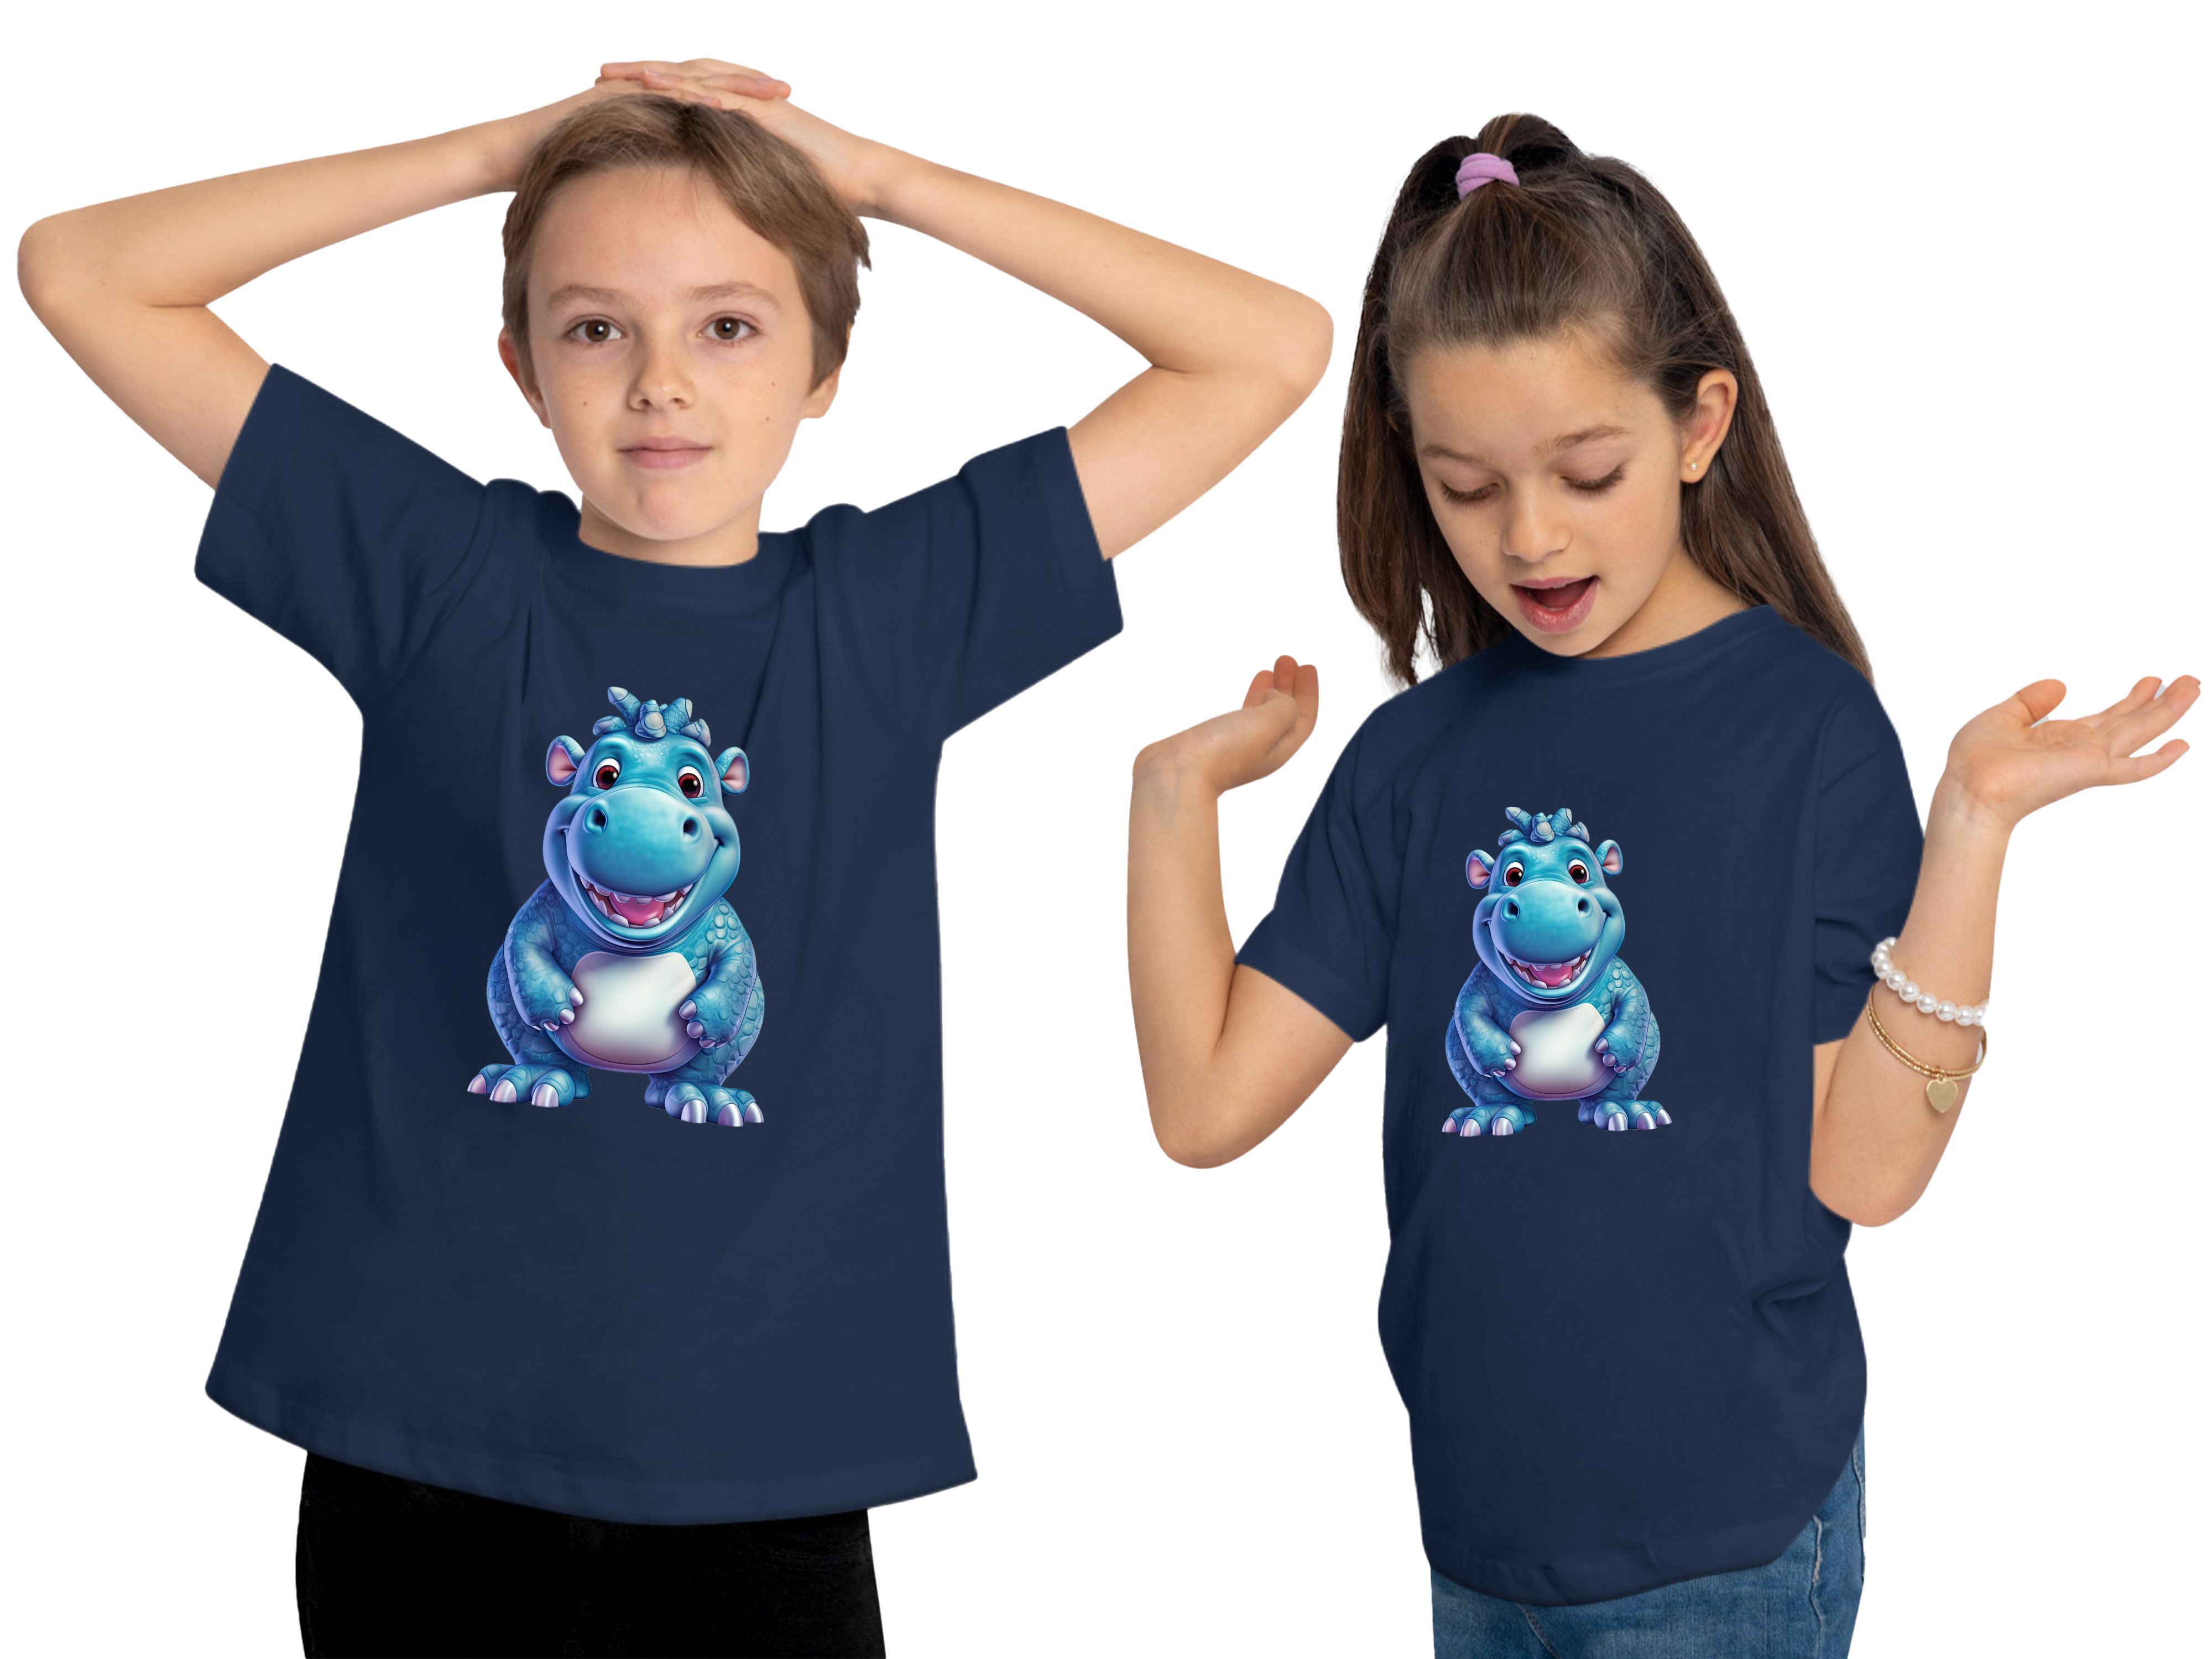 MyDesign24 T-Shirt Kinder Wildtier Print blau Baumwollshirt navy Baby - mit bedruckt Nilpferd Hippo i274 Aufdruck, Shirt